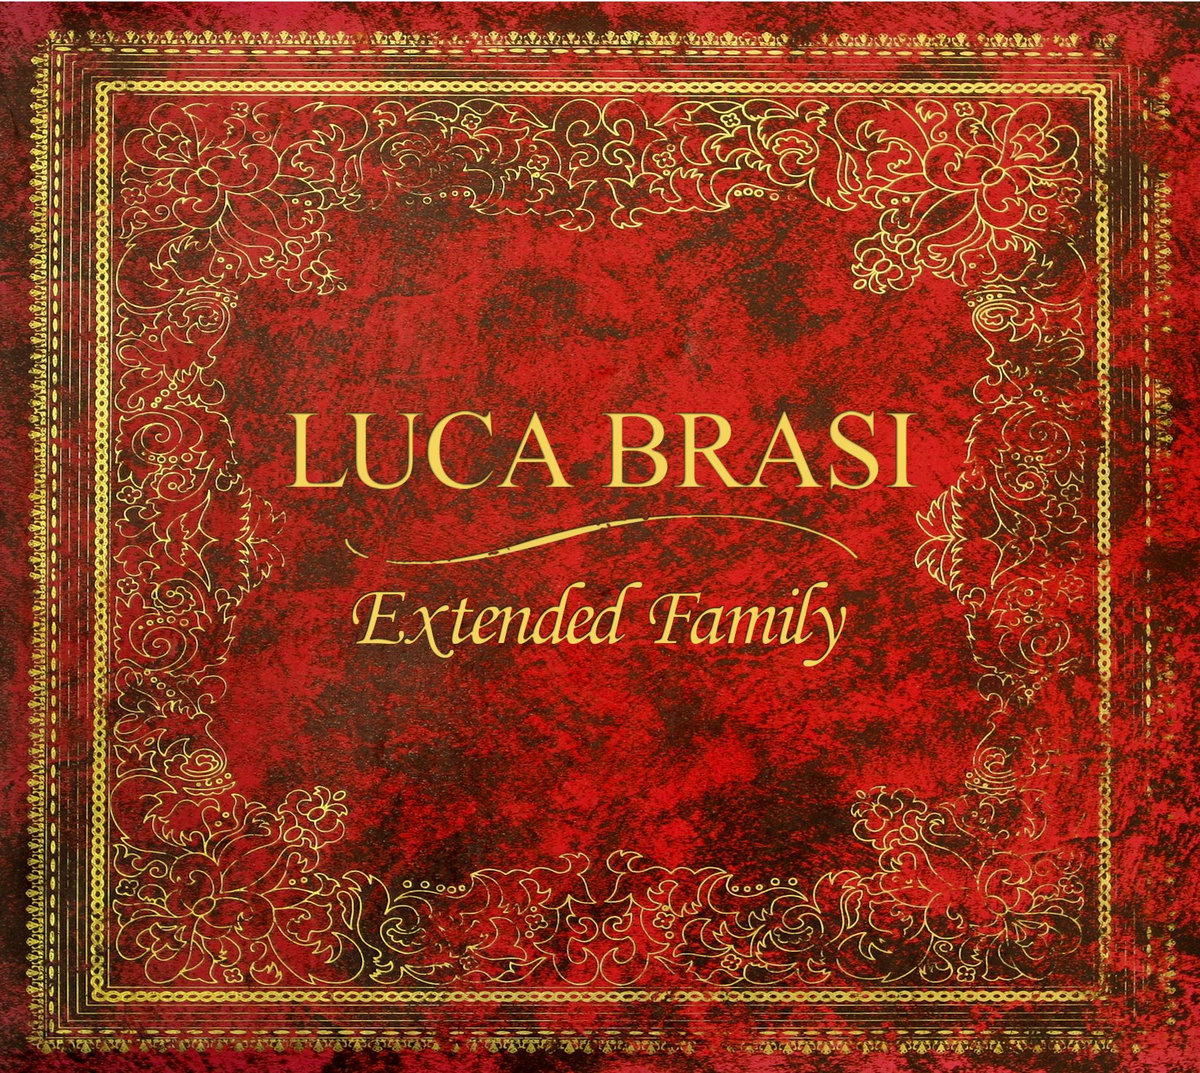 Luca Brasi - Extended Family